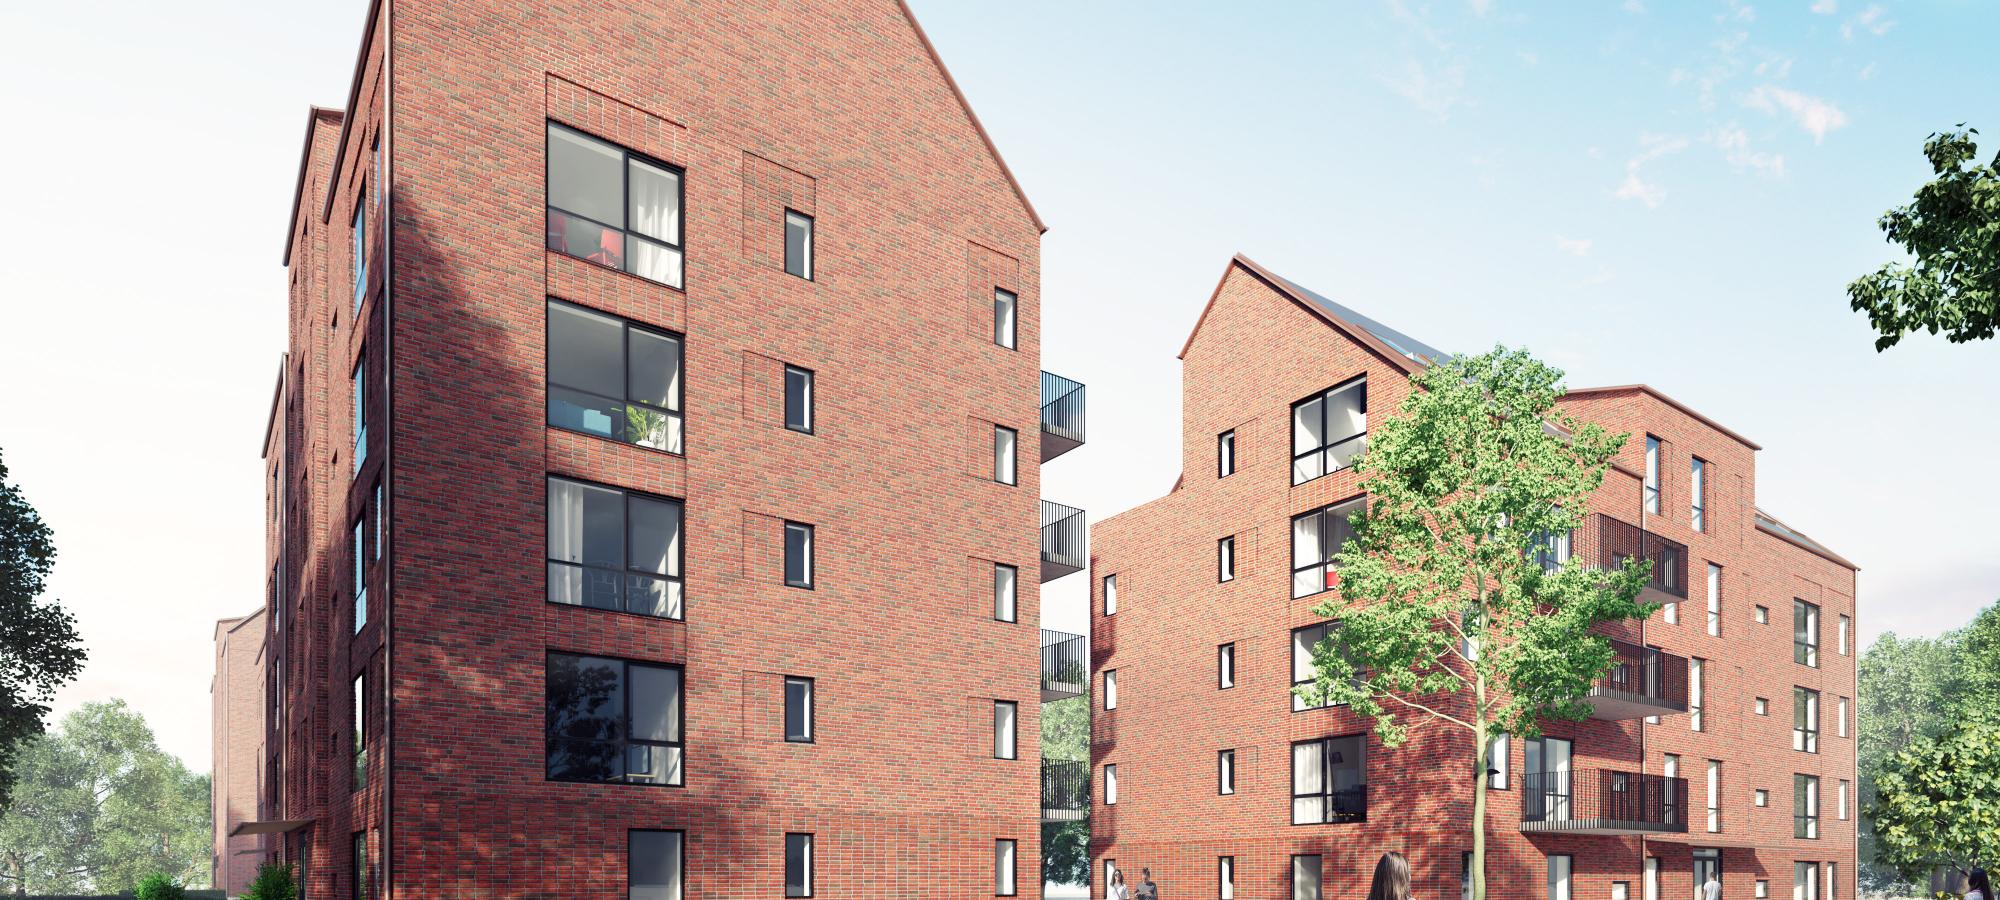 JSB Construction AB har fått i uppdrag av LKF, Lunds kommuns Fastighetsbolag, att bygga 113 hyresrätter i Södra Råbylund i Lund. Bild: Liljewall arkitekter